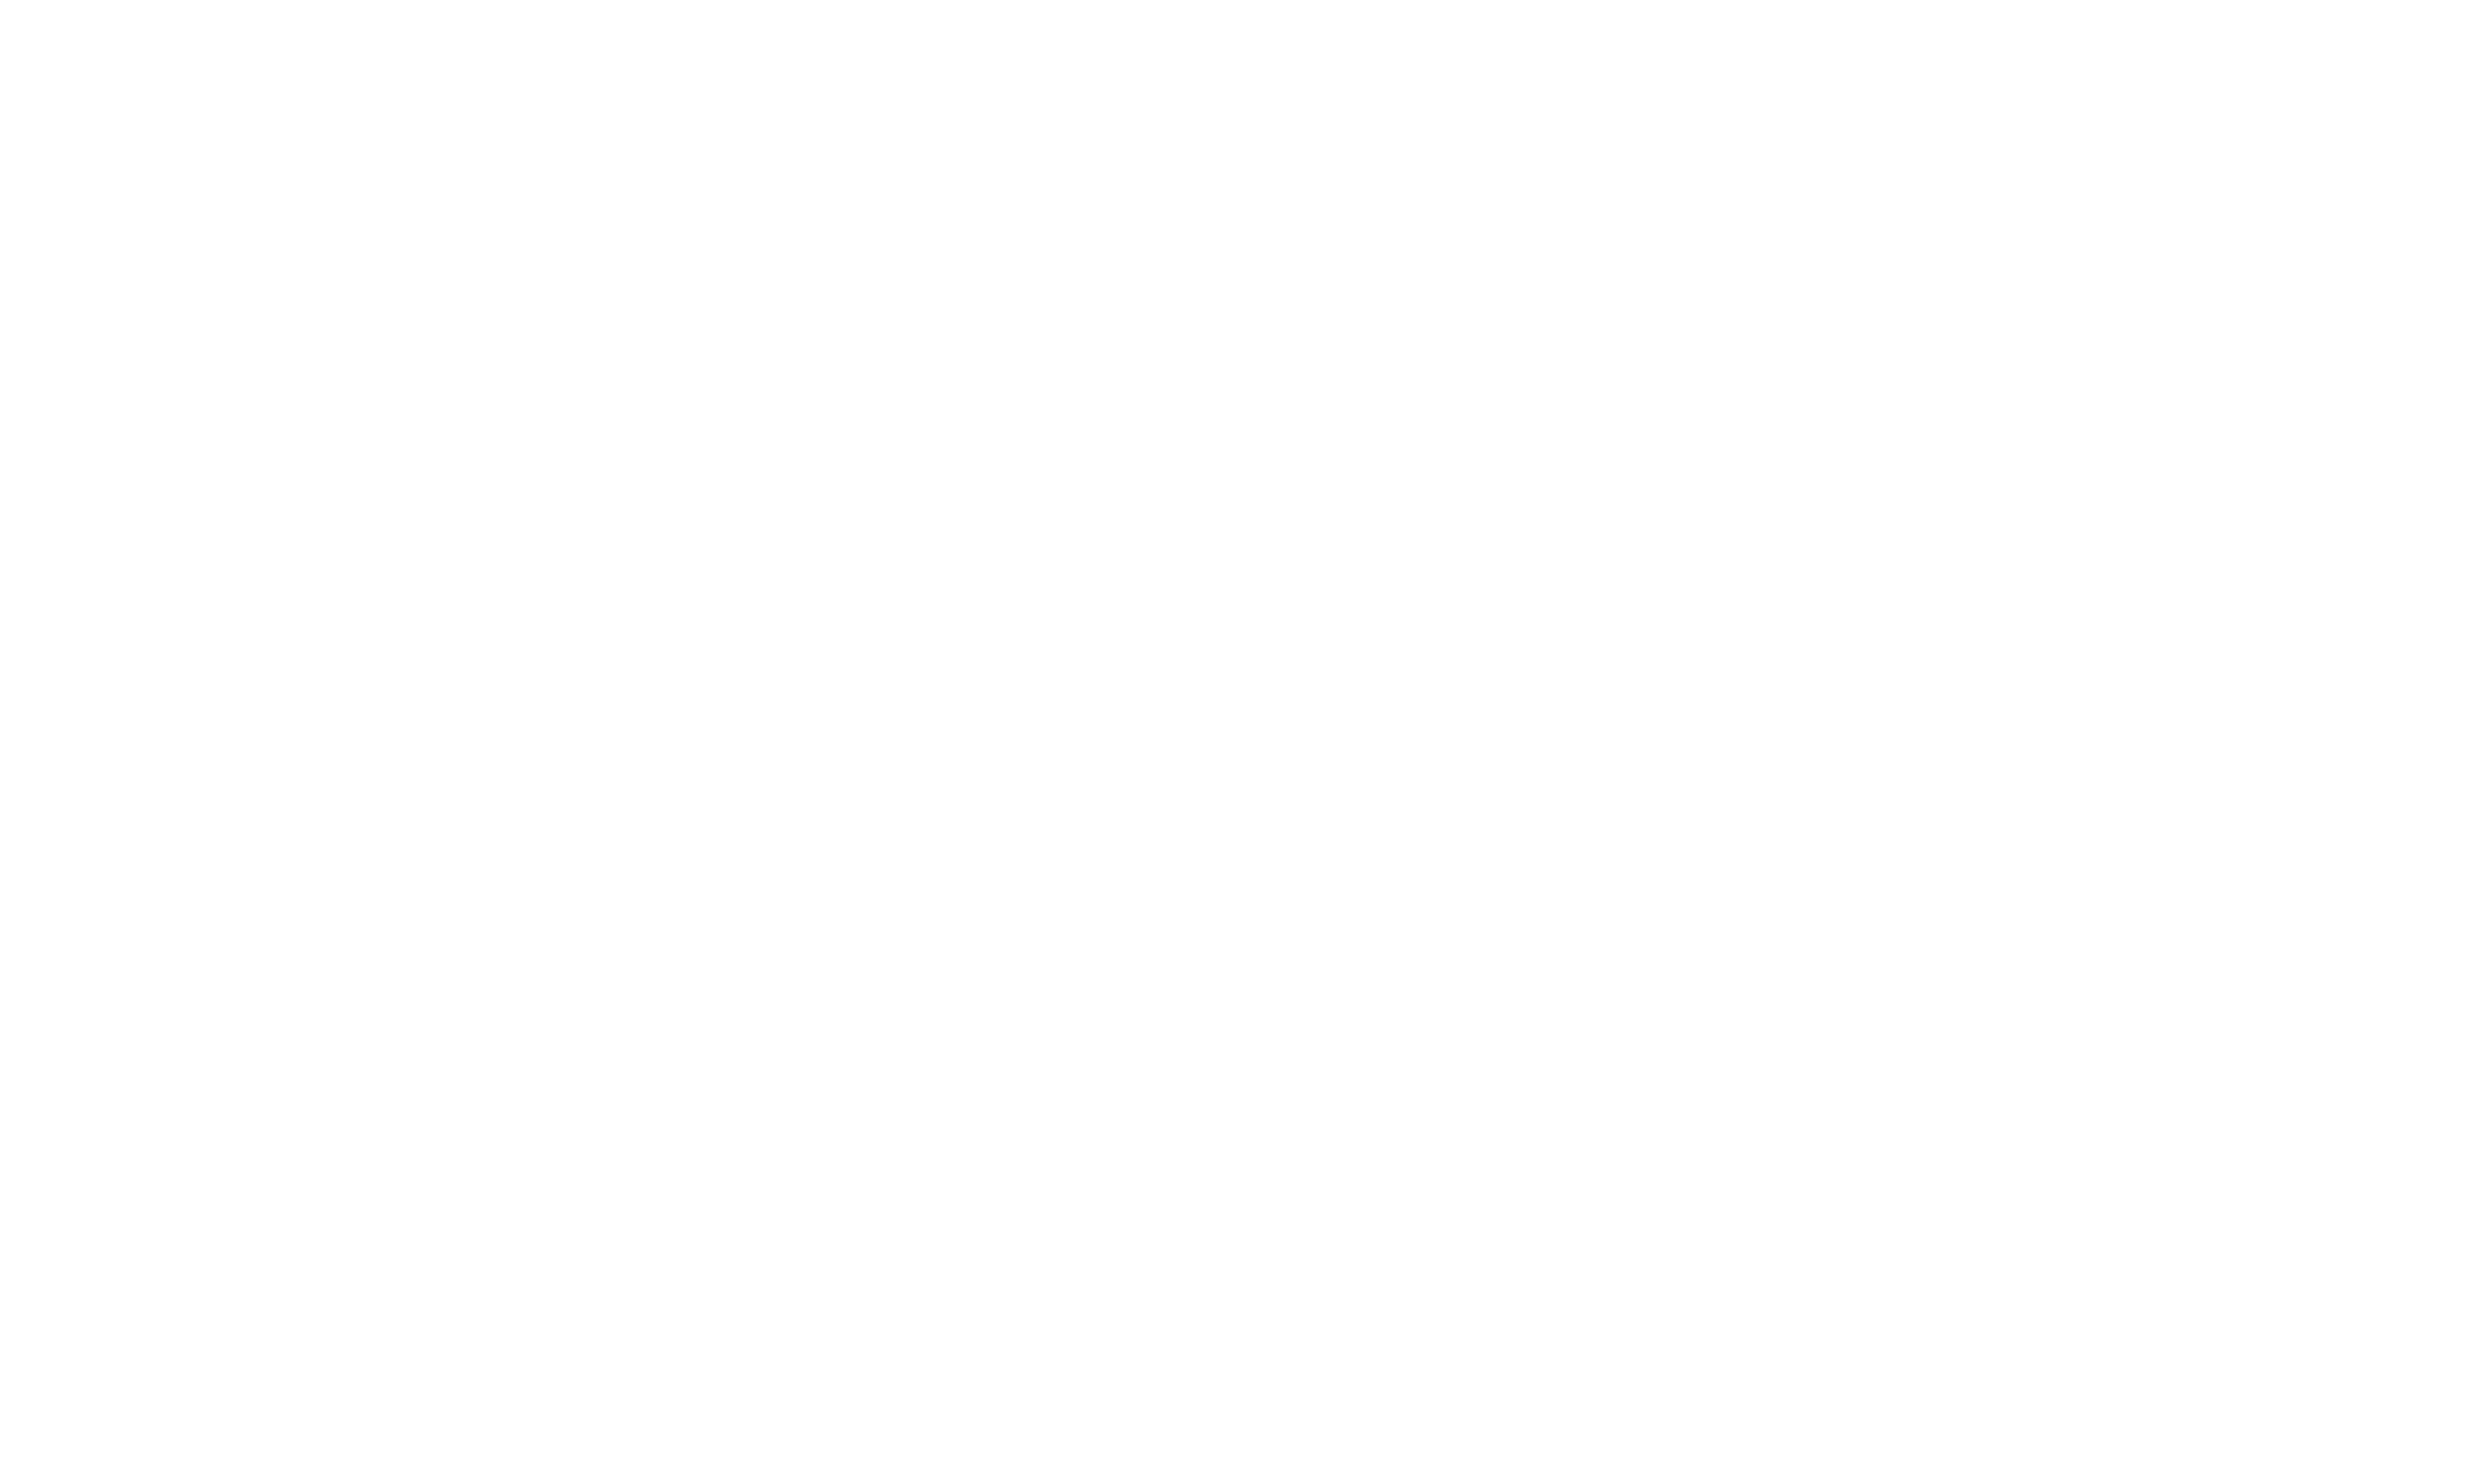 MamooshMusic